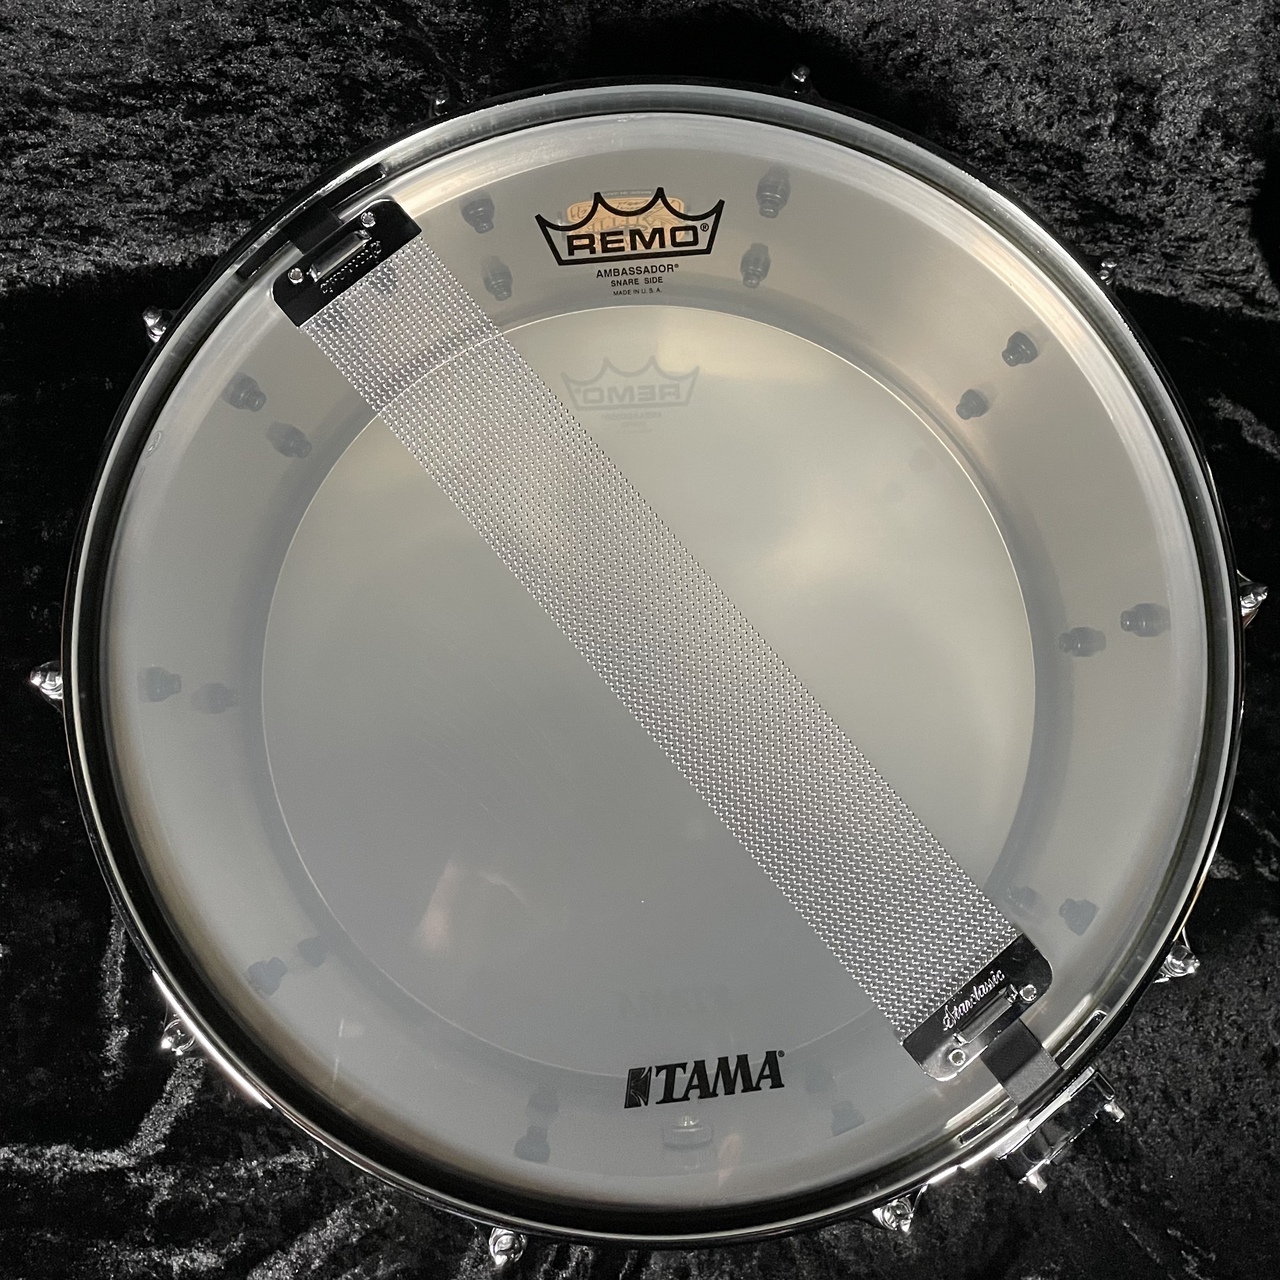 Tama 長谷川浩二 Signature Snare Drum KH1465 -Limited Product